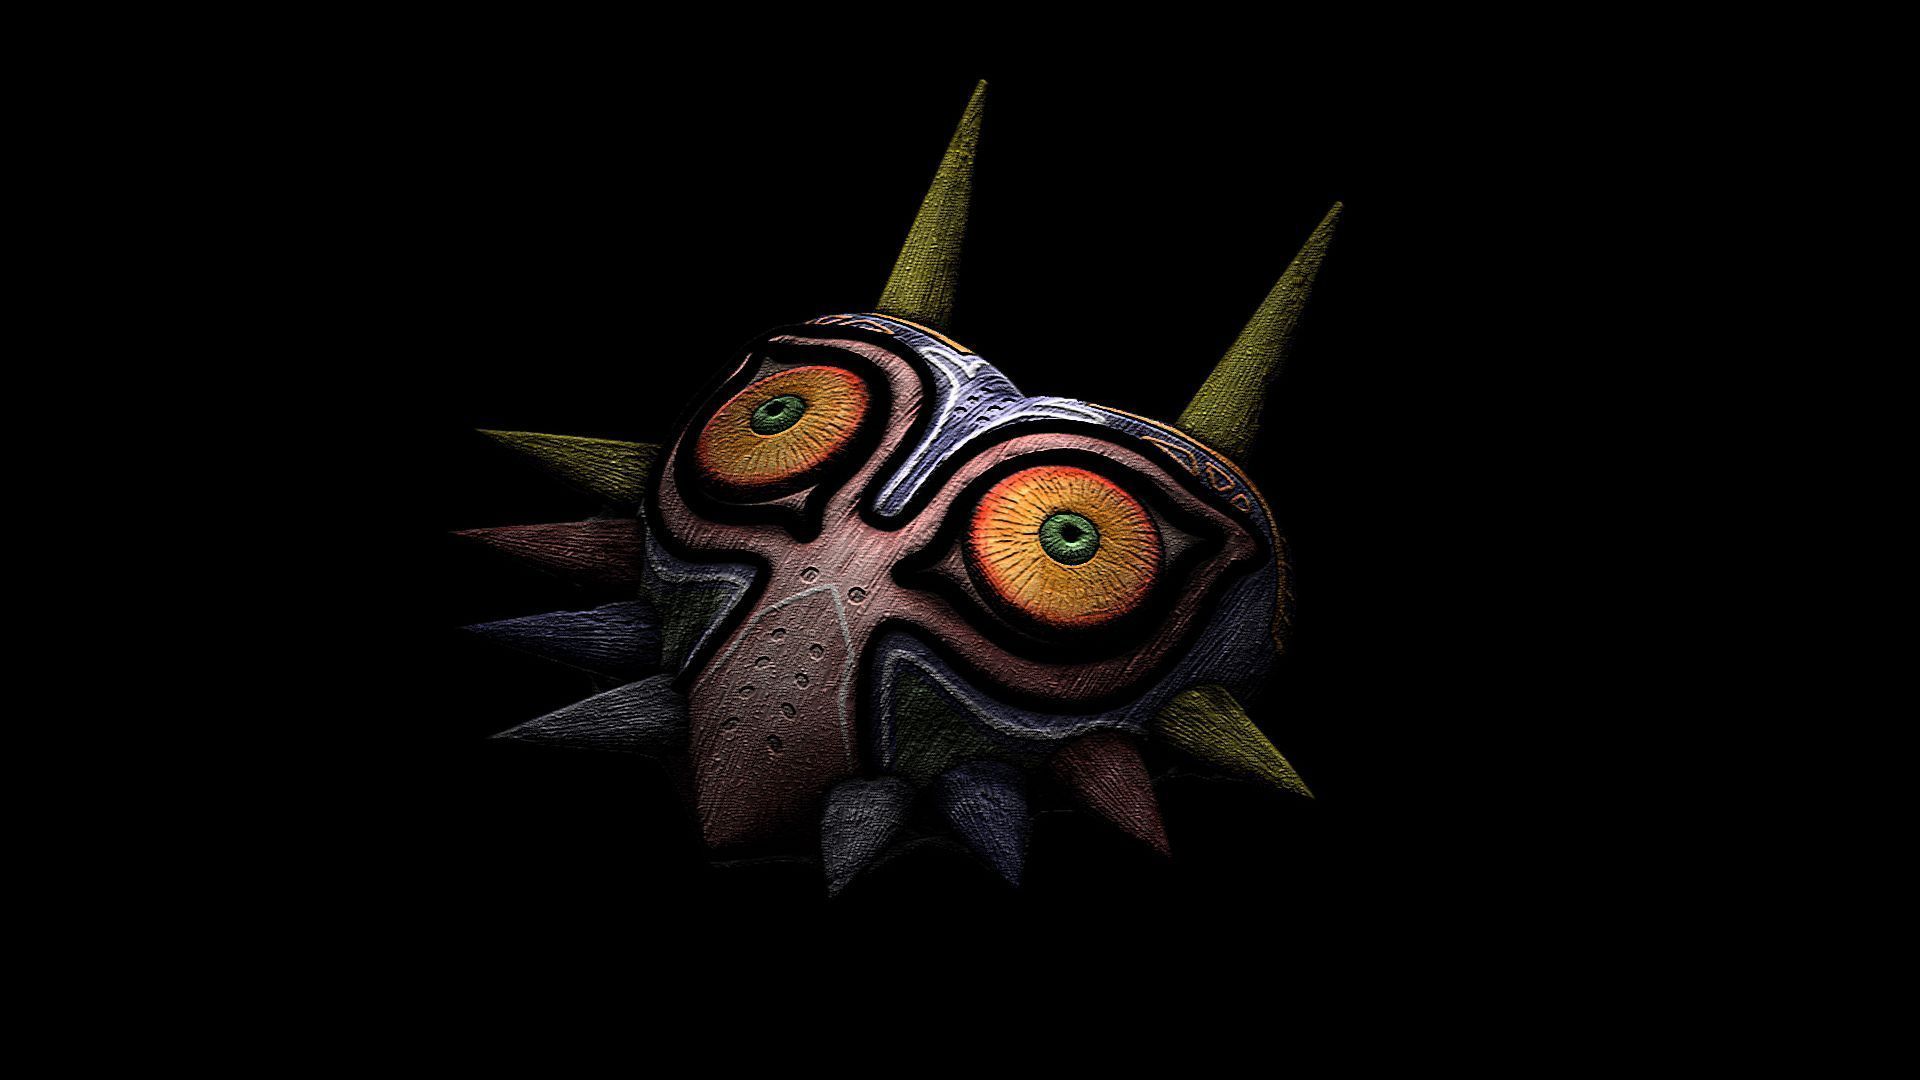 The Legend Of Zelda: Majora's Mask Computer Wallpapers, Desktop ...